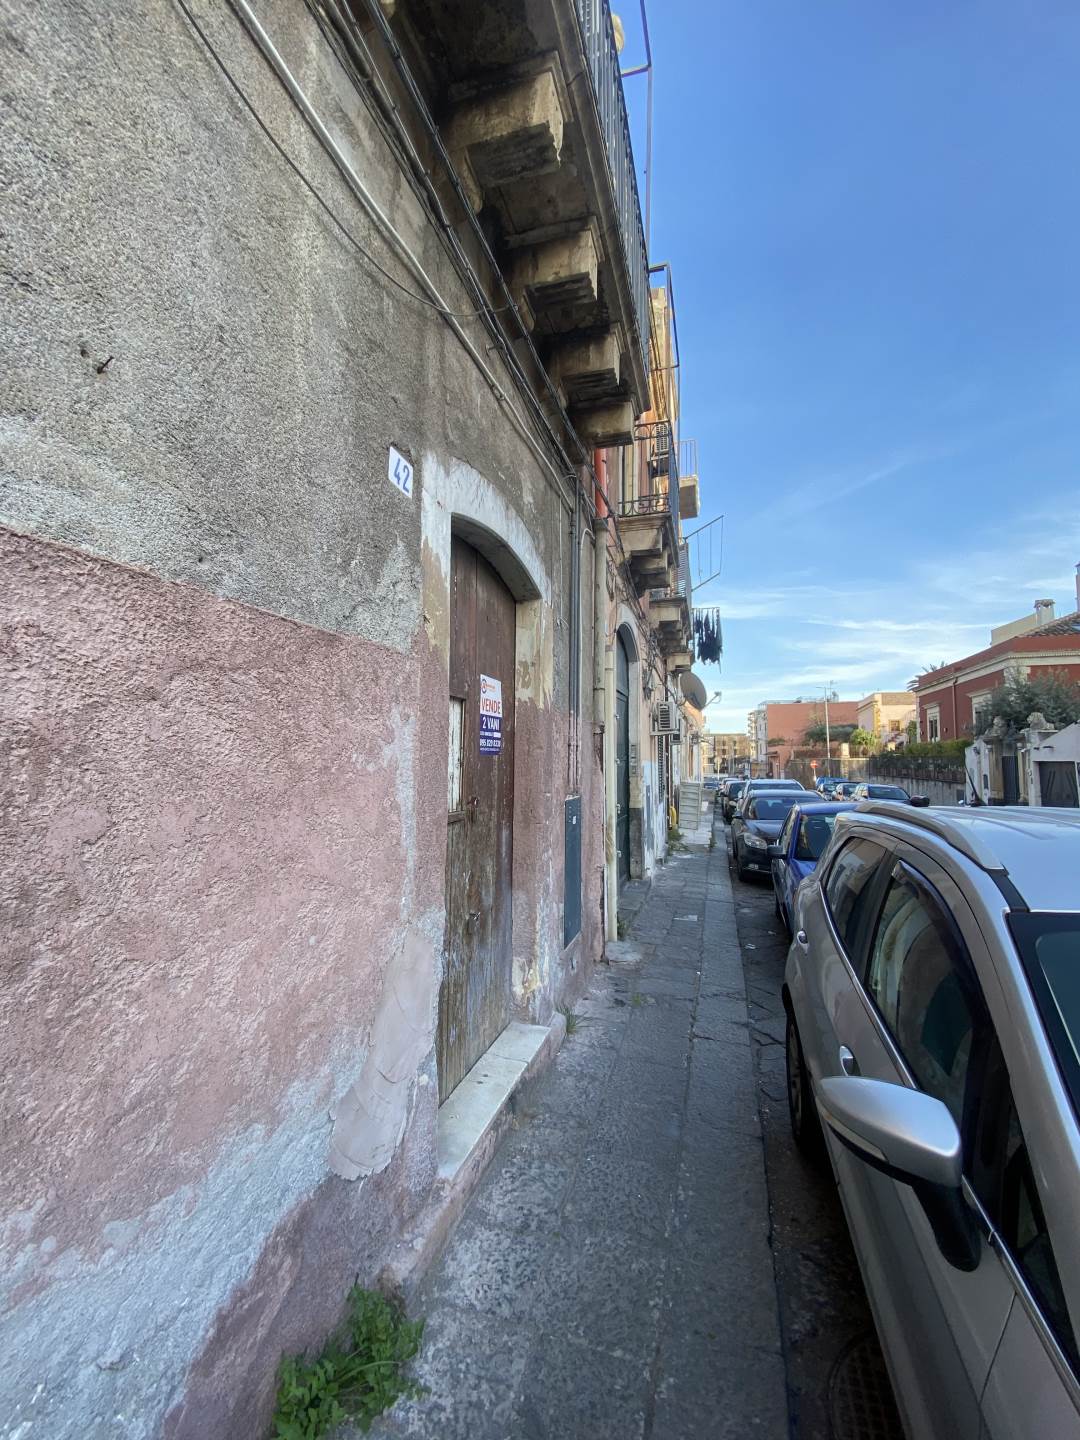 Casa semi indipendente in vendita a Catania Picanello